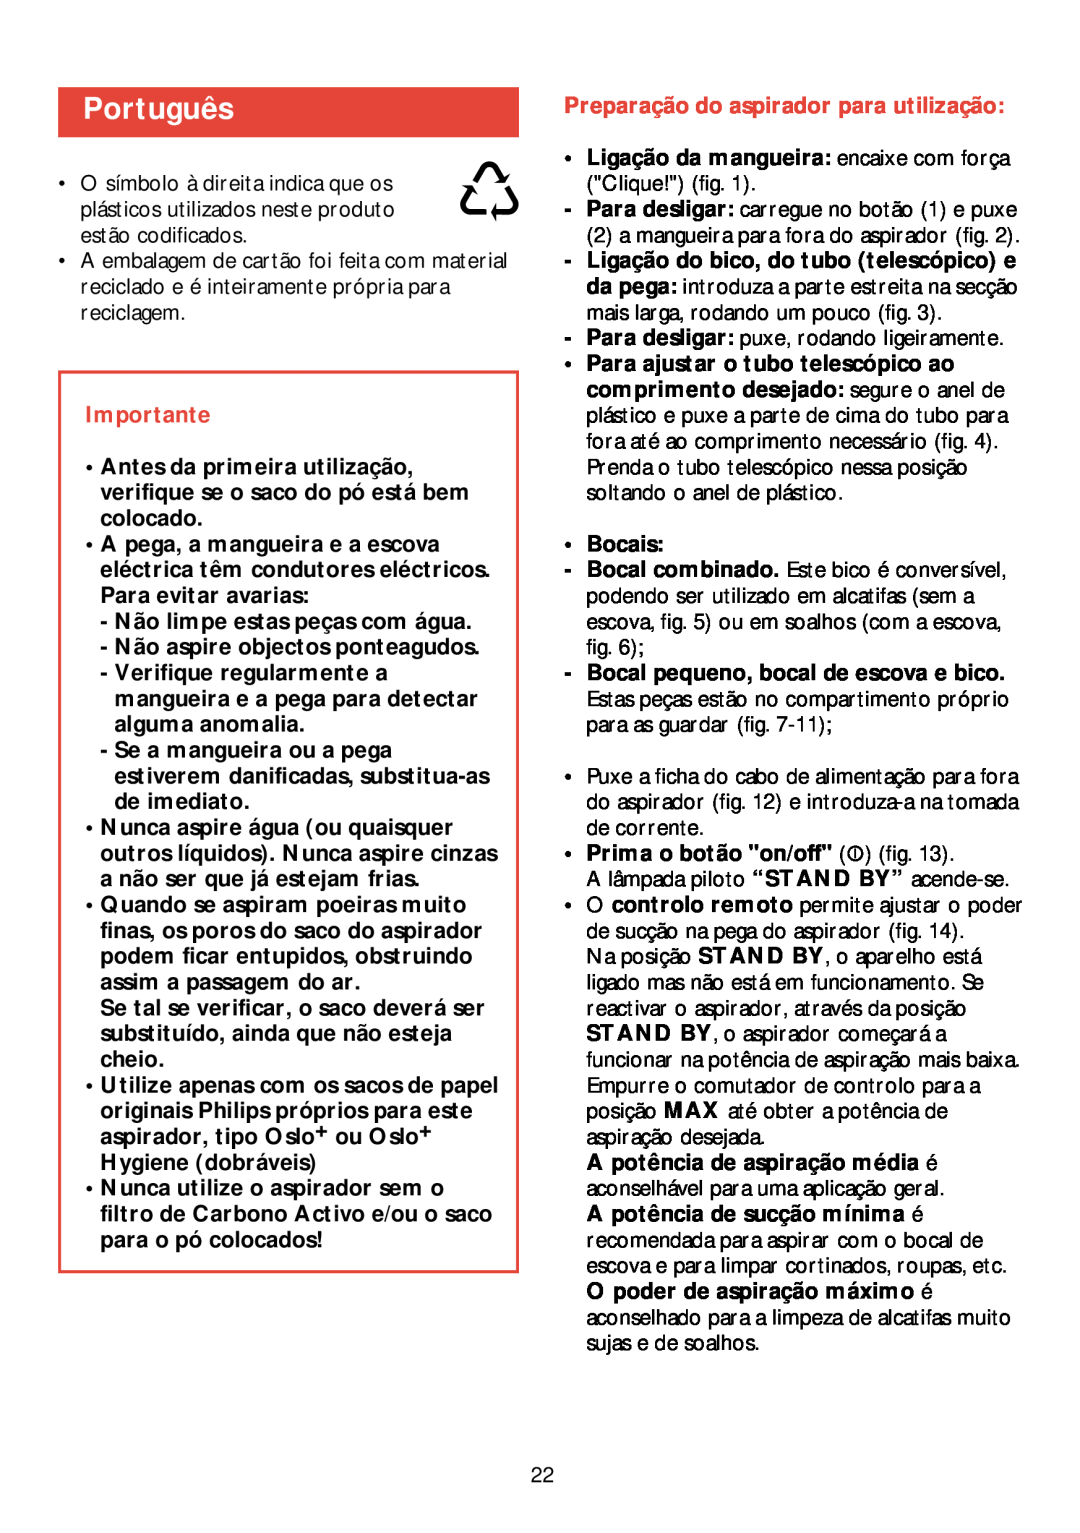 Philips HR 6988 manual Português, Preparação do aspirador para utilização, Importante 